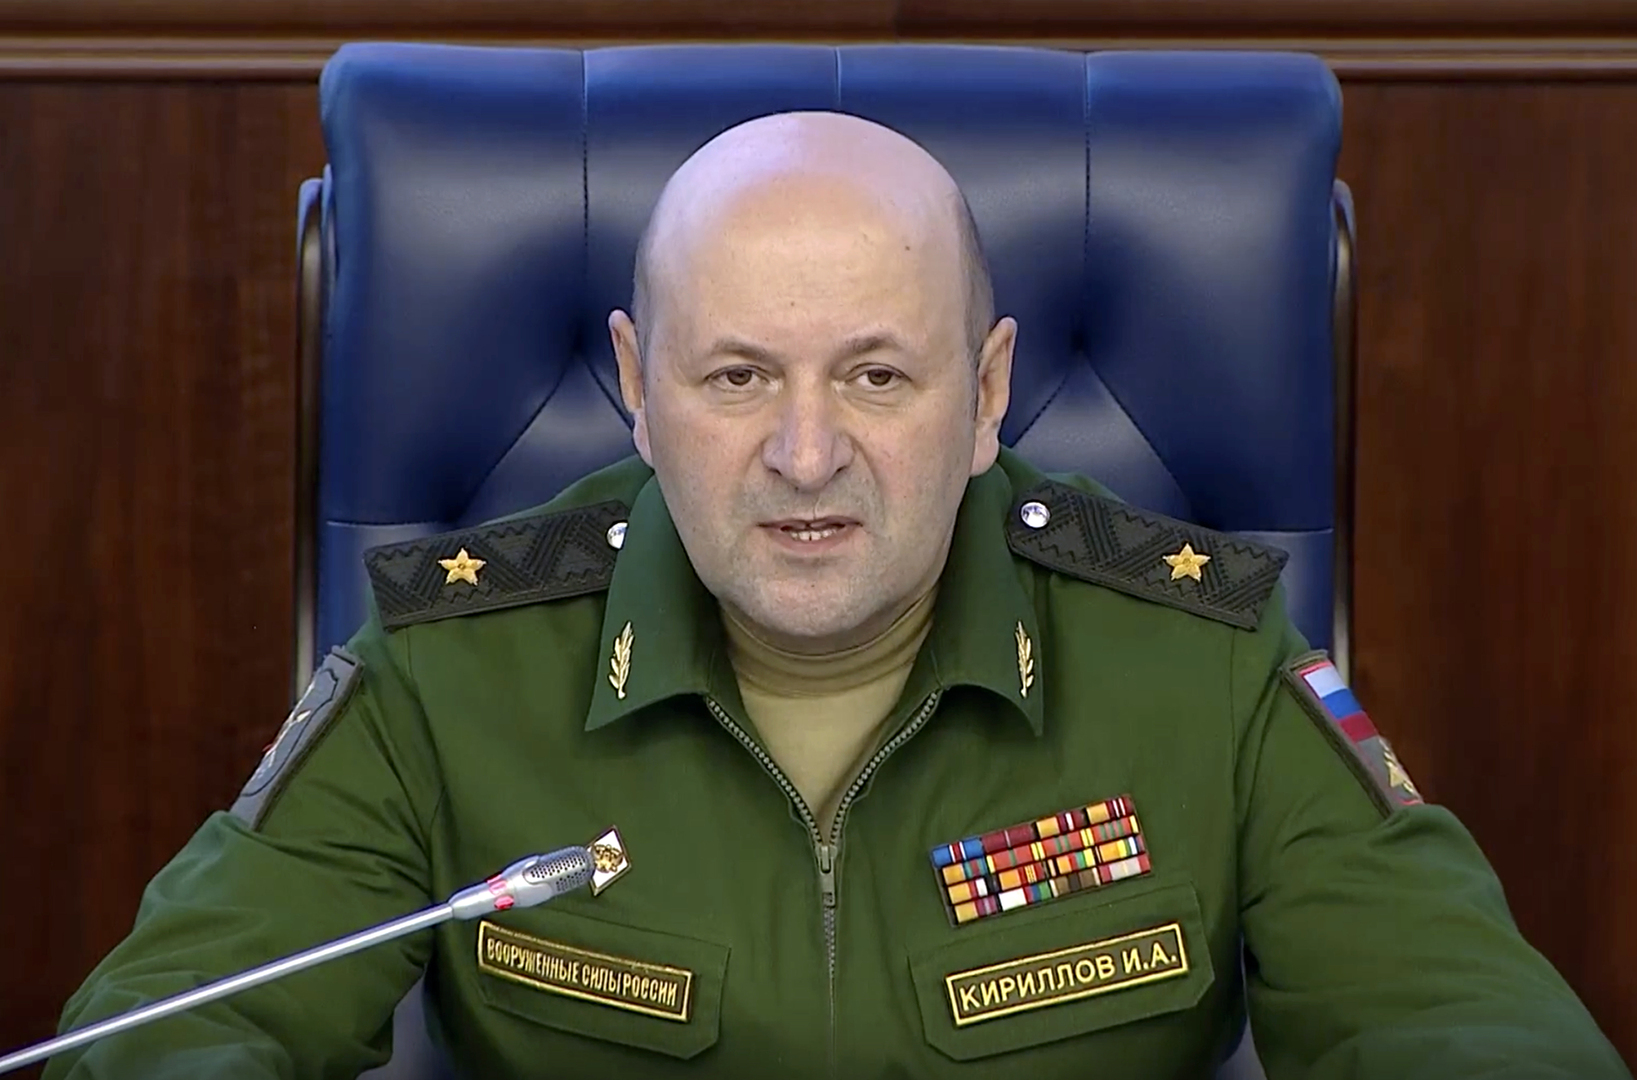 جنرال في وزارة الدفاع الروسية يتحدث عن براءة الاختراع الأمريكية رقم 8967029